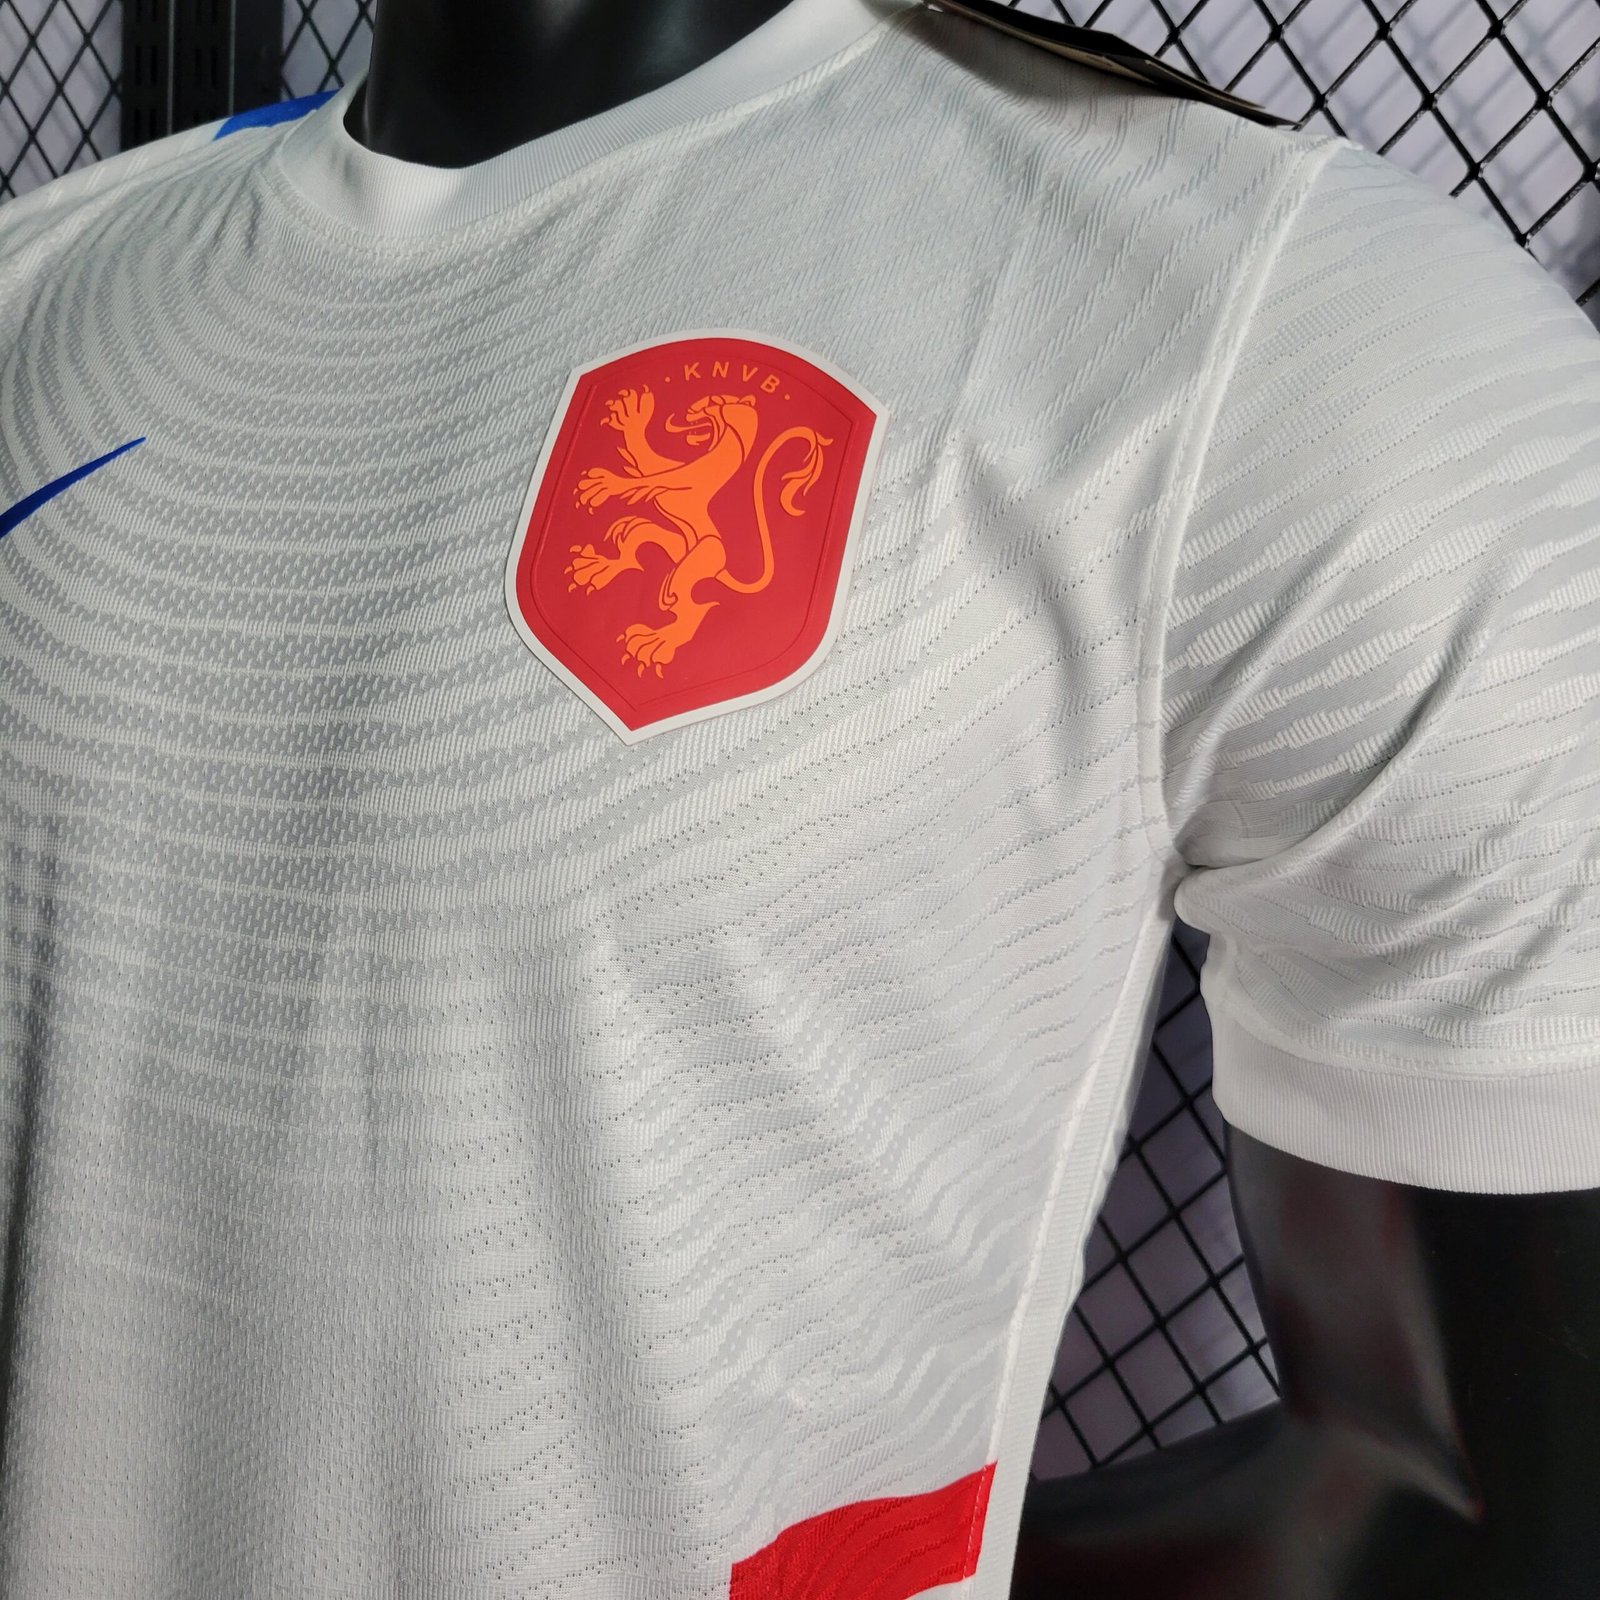 Willem II lança camisa especial para final da KNVB Beker » Mantos do Futebol